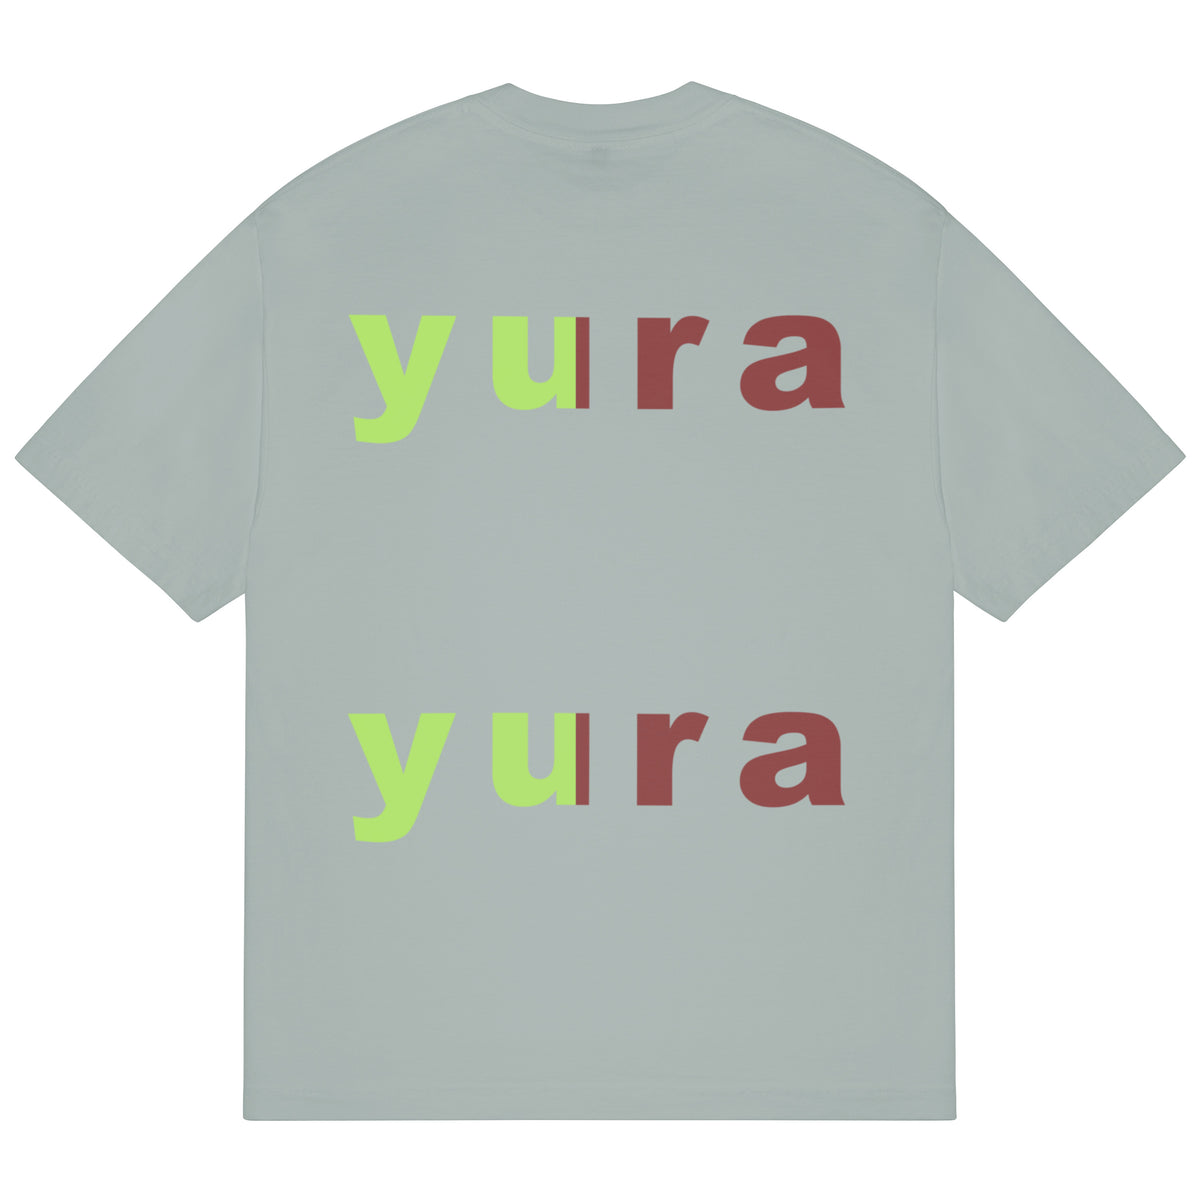 yura-yura T-Shirt (Sage)